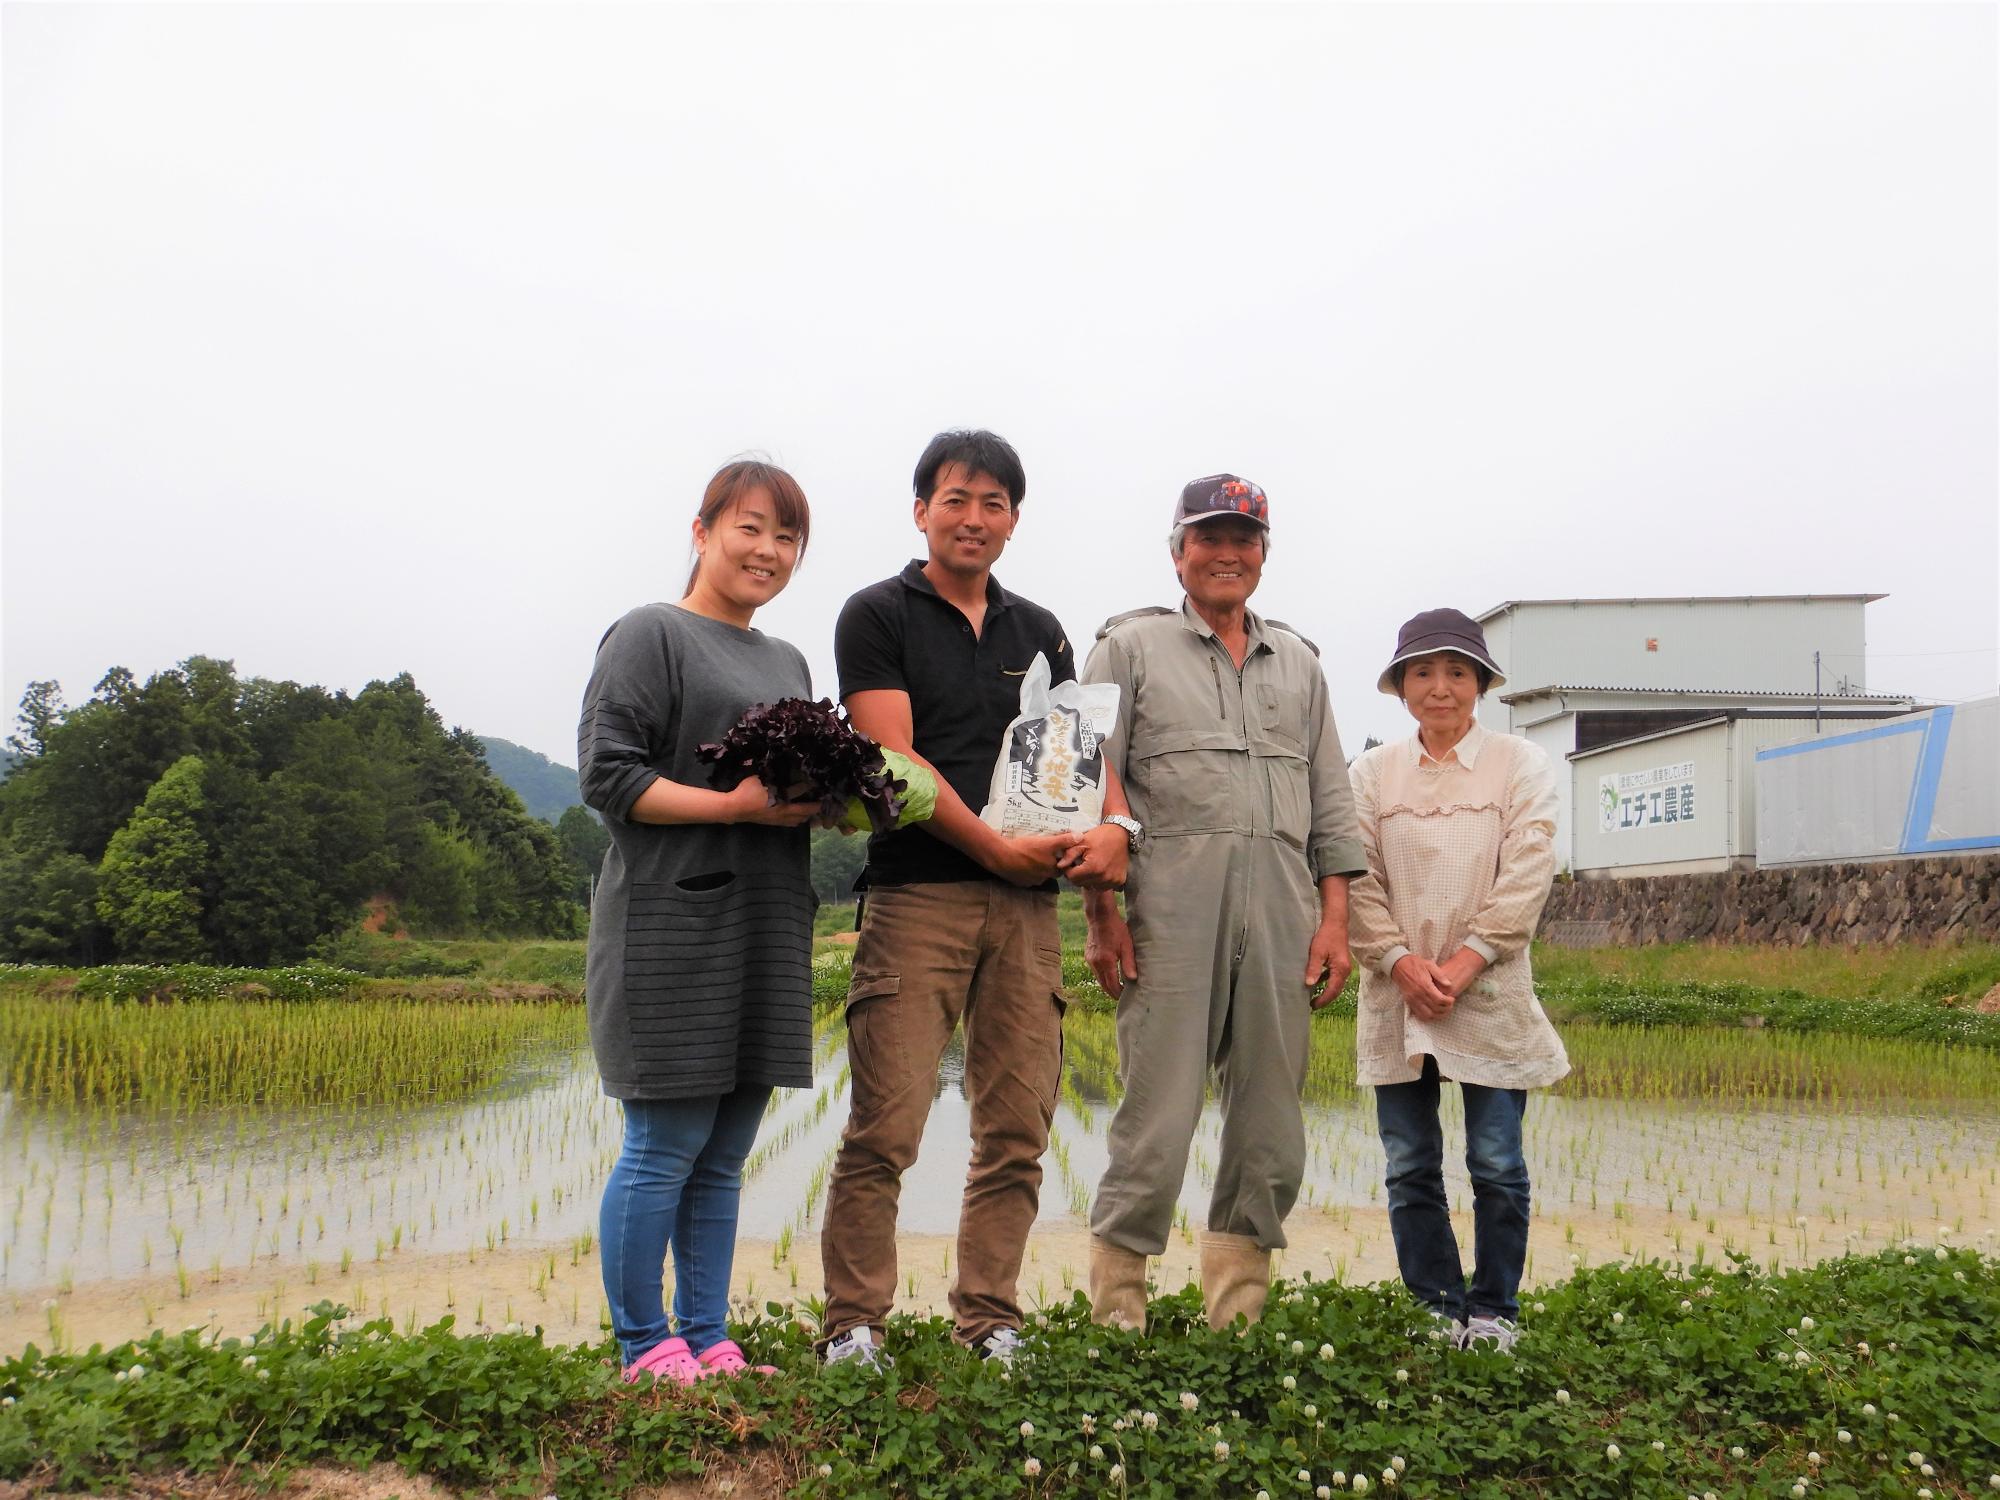 写真左から、妻・絵梨さん、昭公さん、父・雅夫さん、母・敏江さん。数人の従業員とともに、チームワークを大切にしている